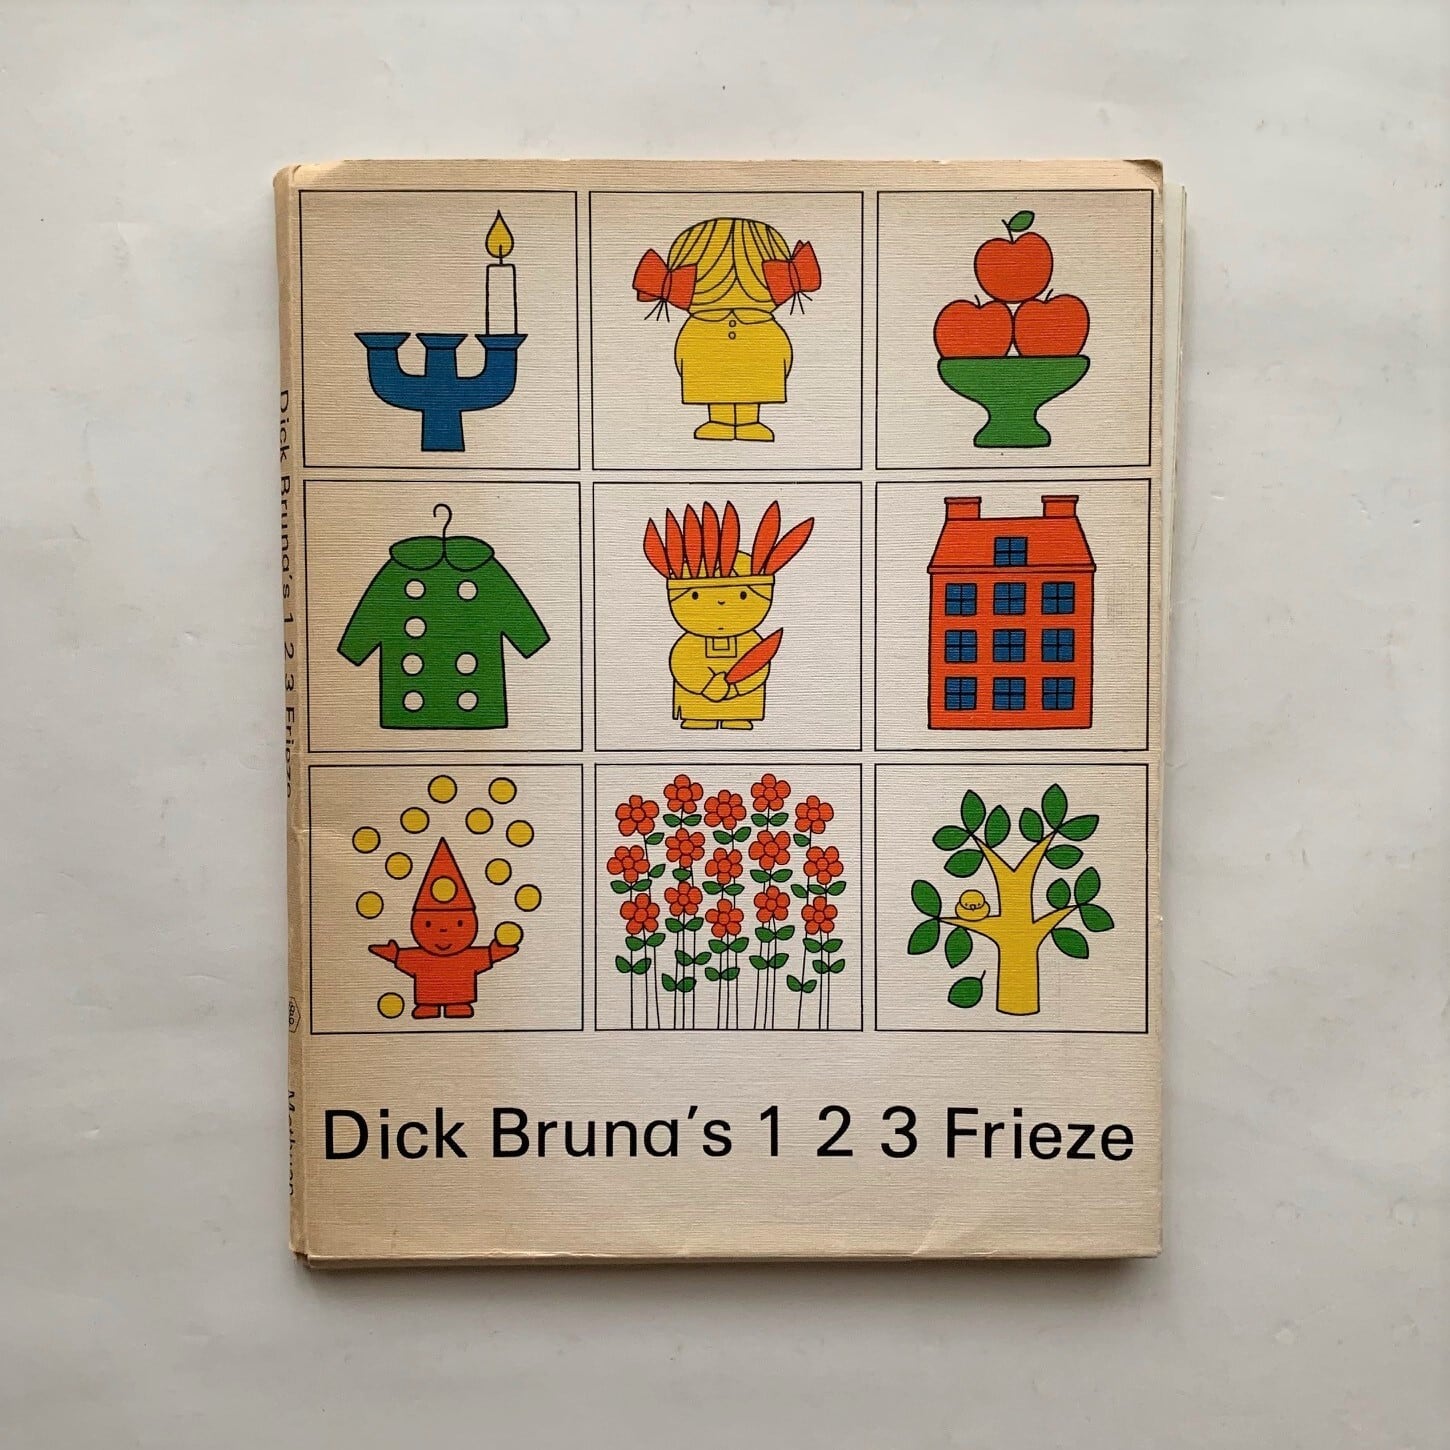 Dick Bruna's 1 2 3 Frieze / Dick Bruna